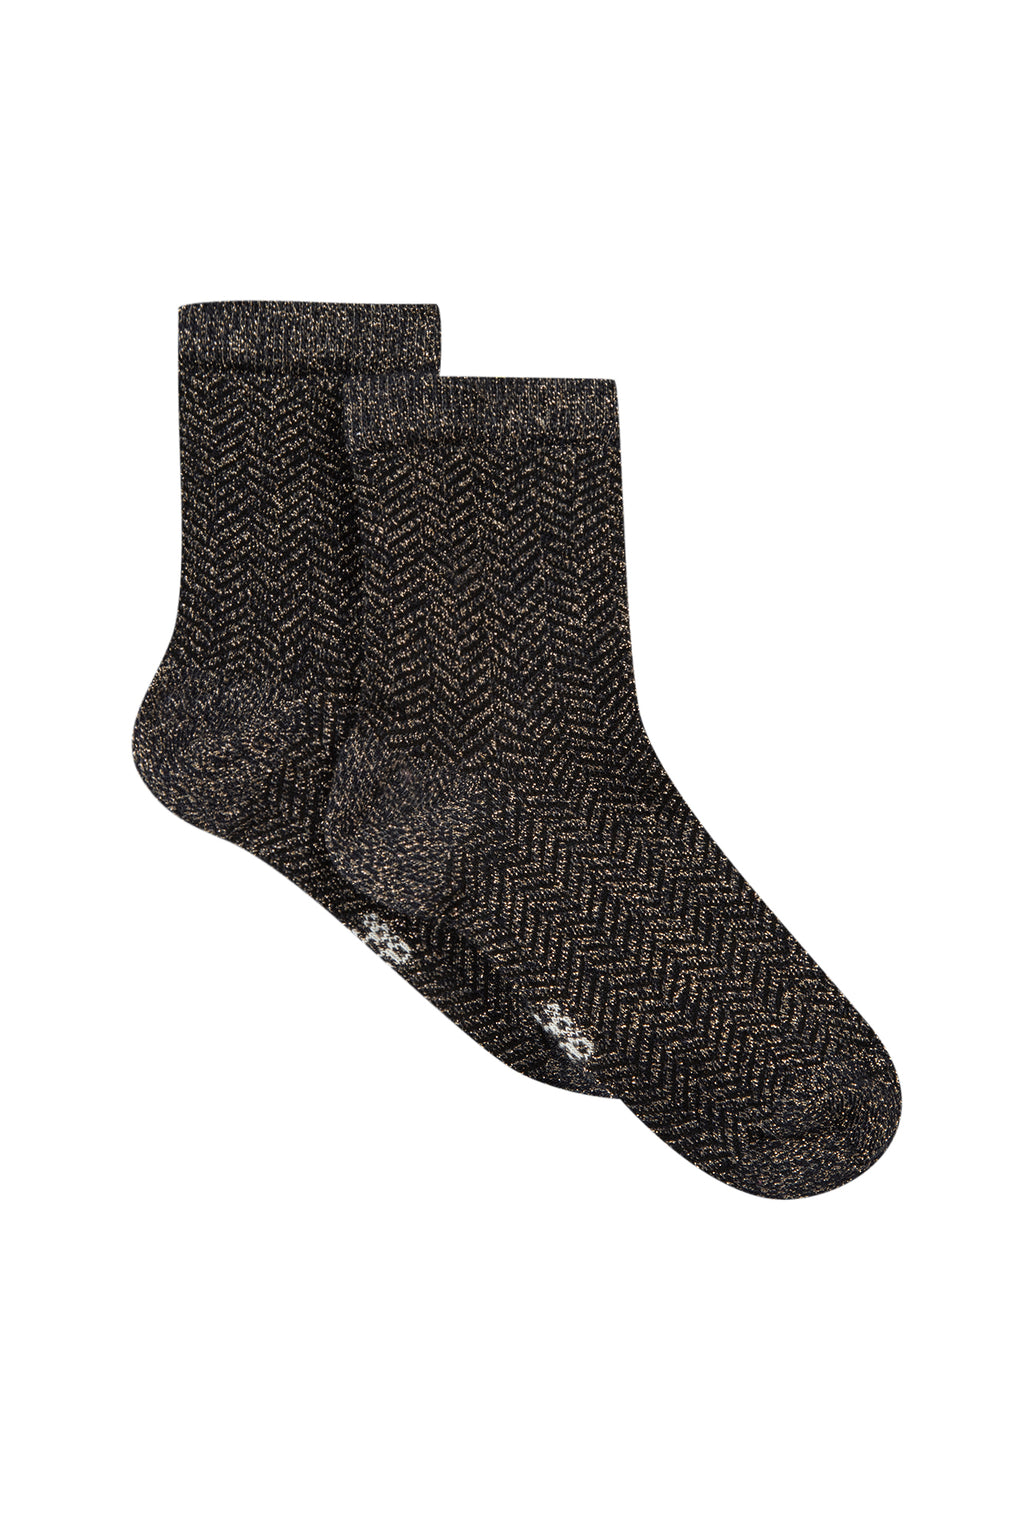 Socks - Navy Knitwear lurex